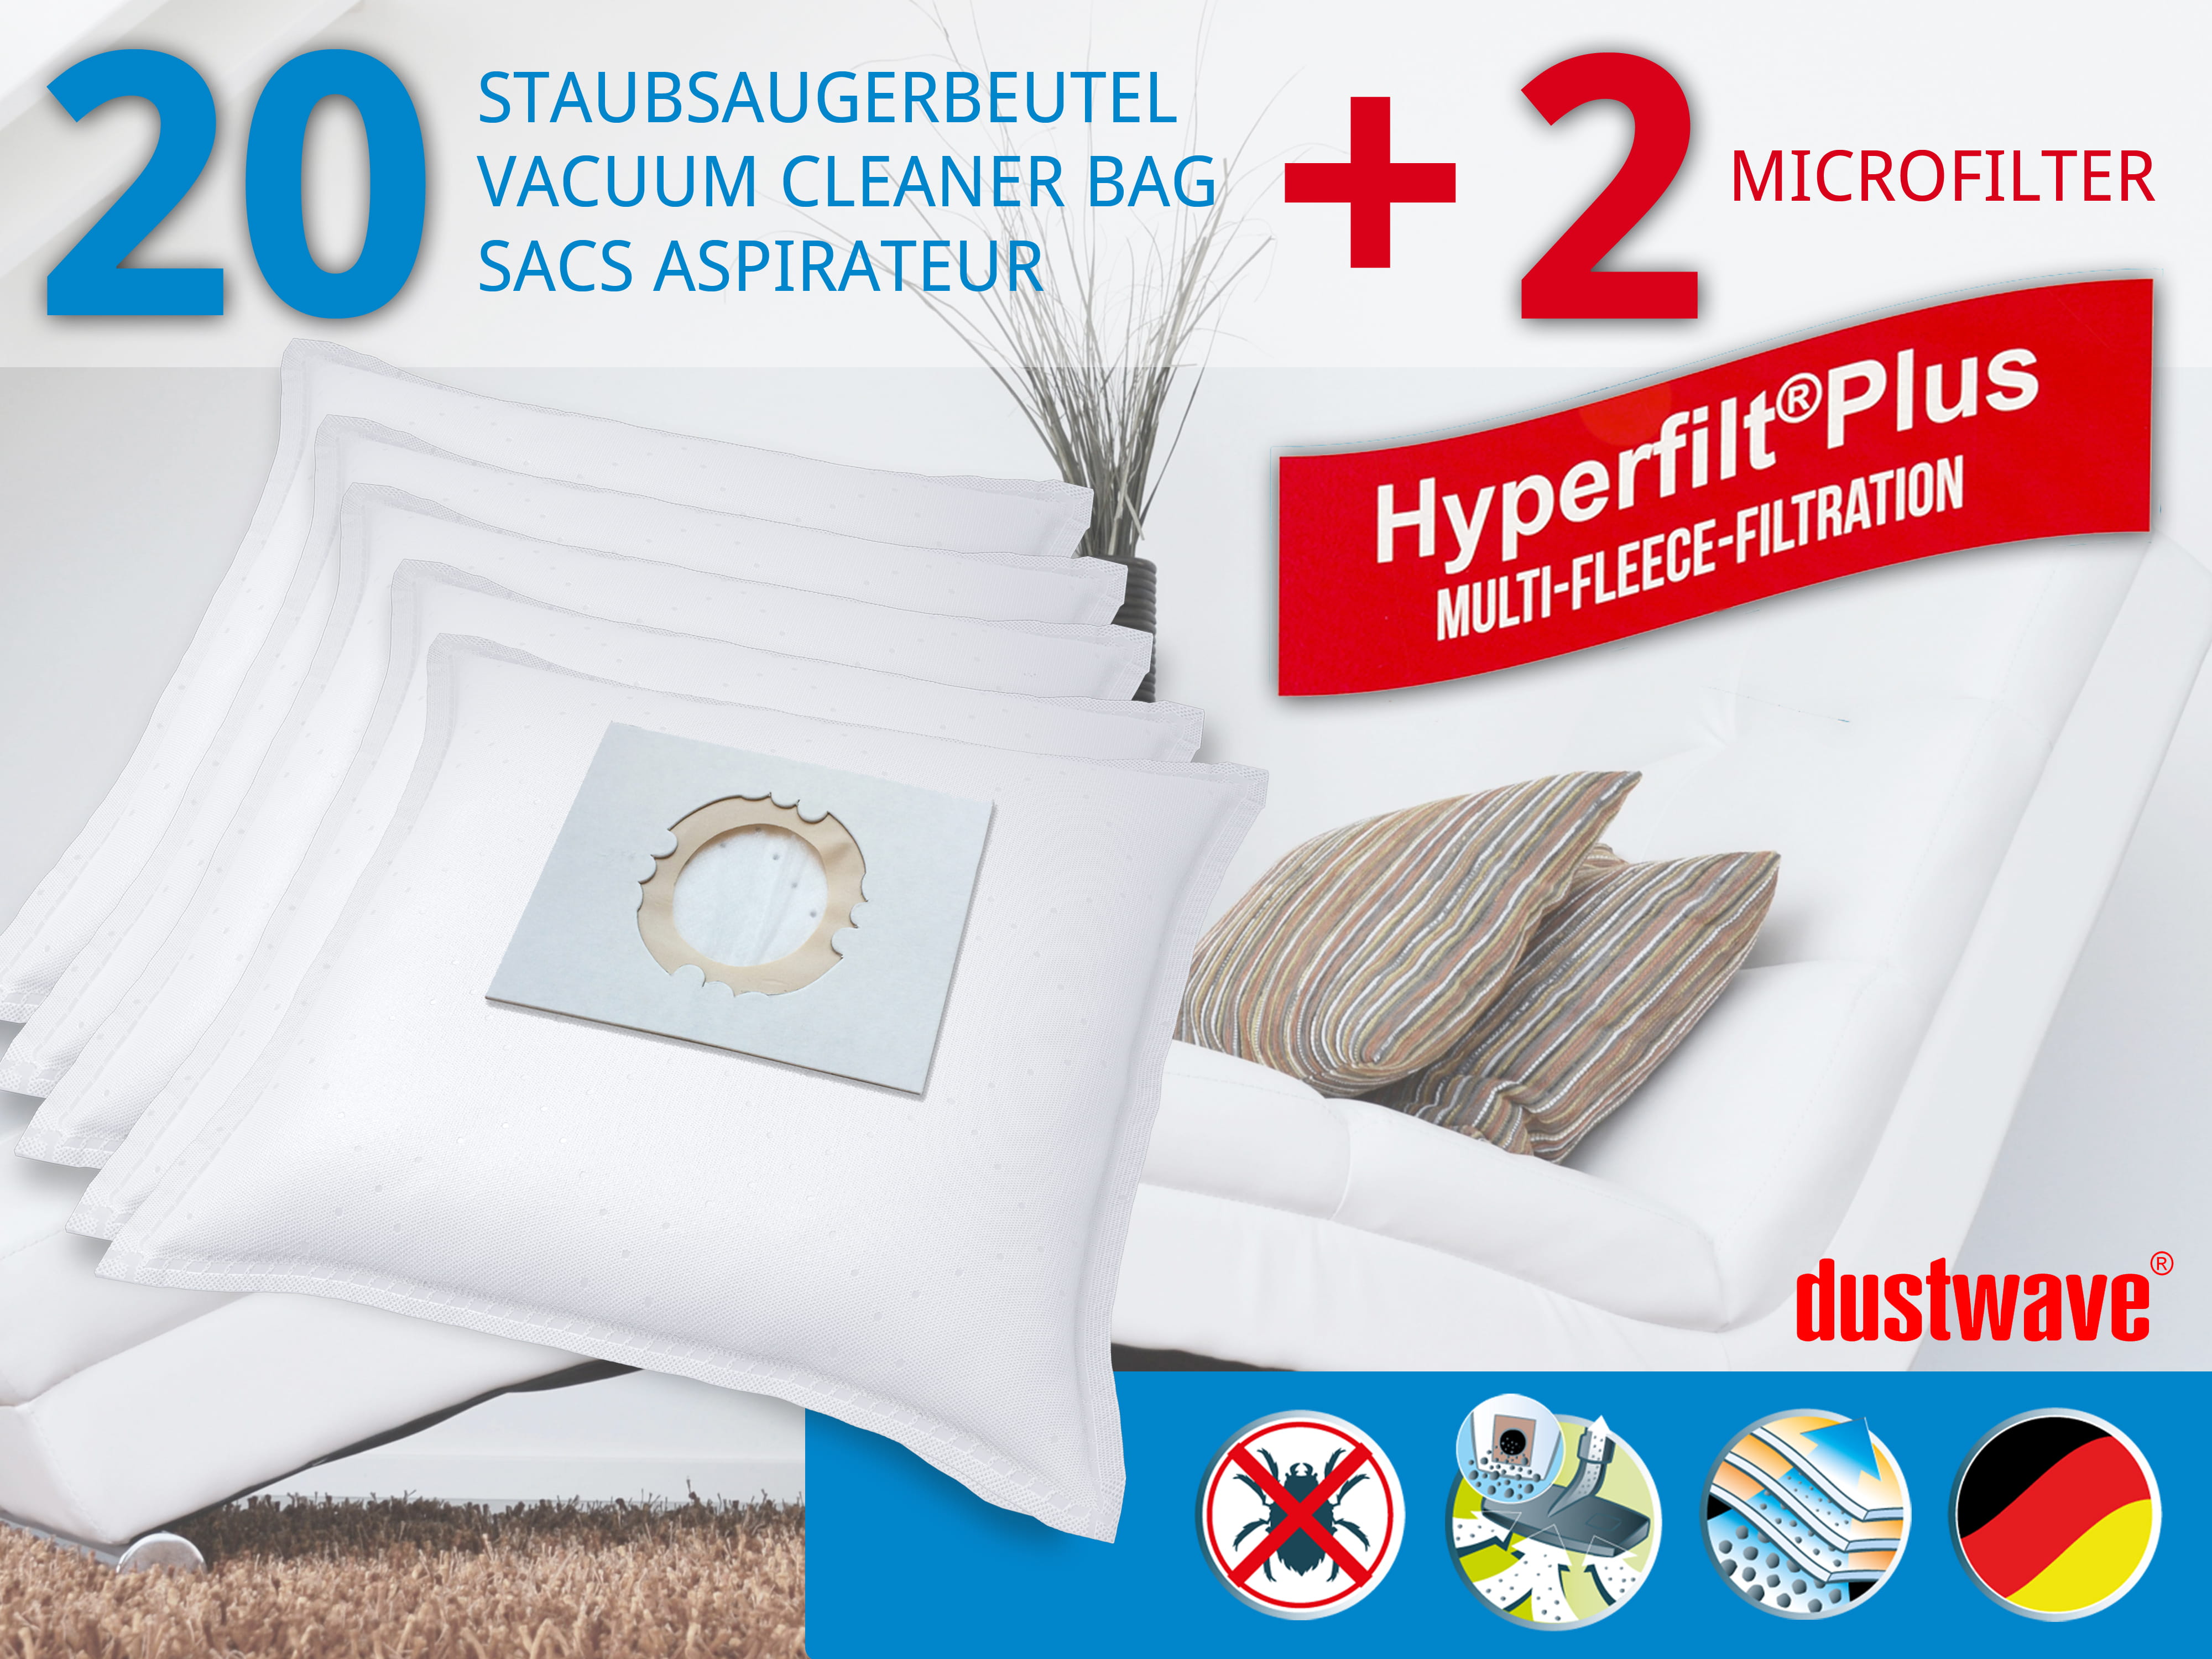 Dustwave® 20 Staubsaugerbeutel für Hoover SCST210F011 - hocheffizient, mehrlagiges Mikrovlies mit Hygieneverschluss - Made in Germany